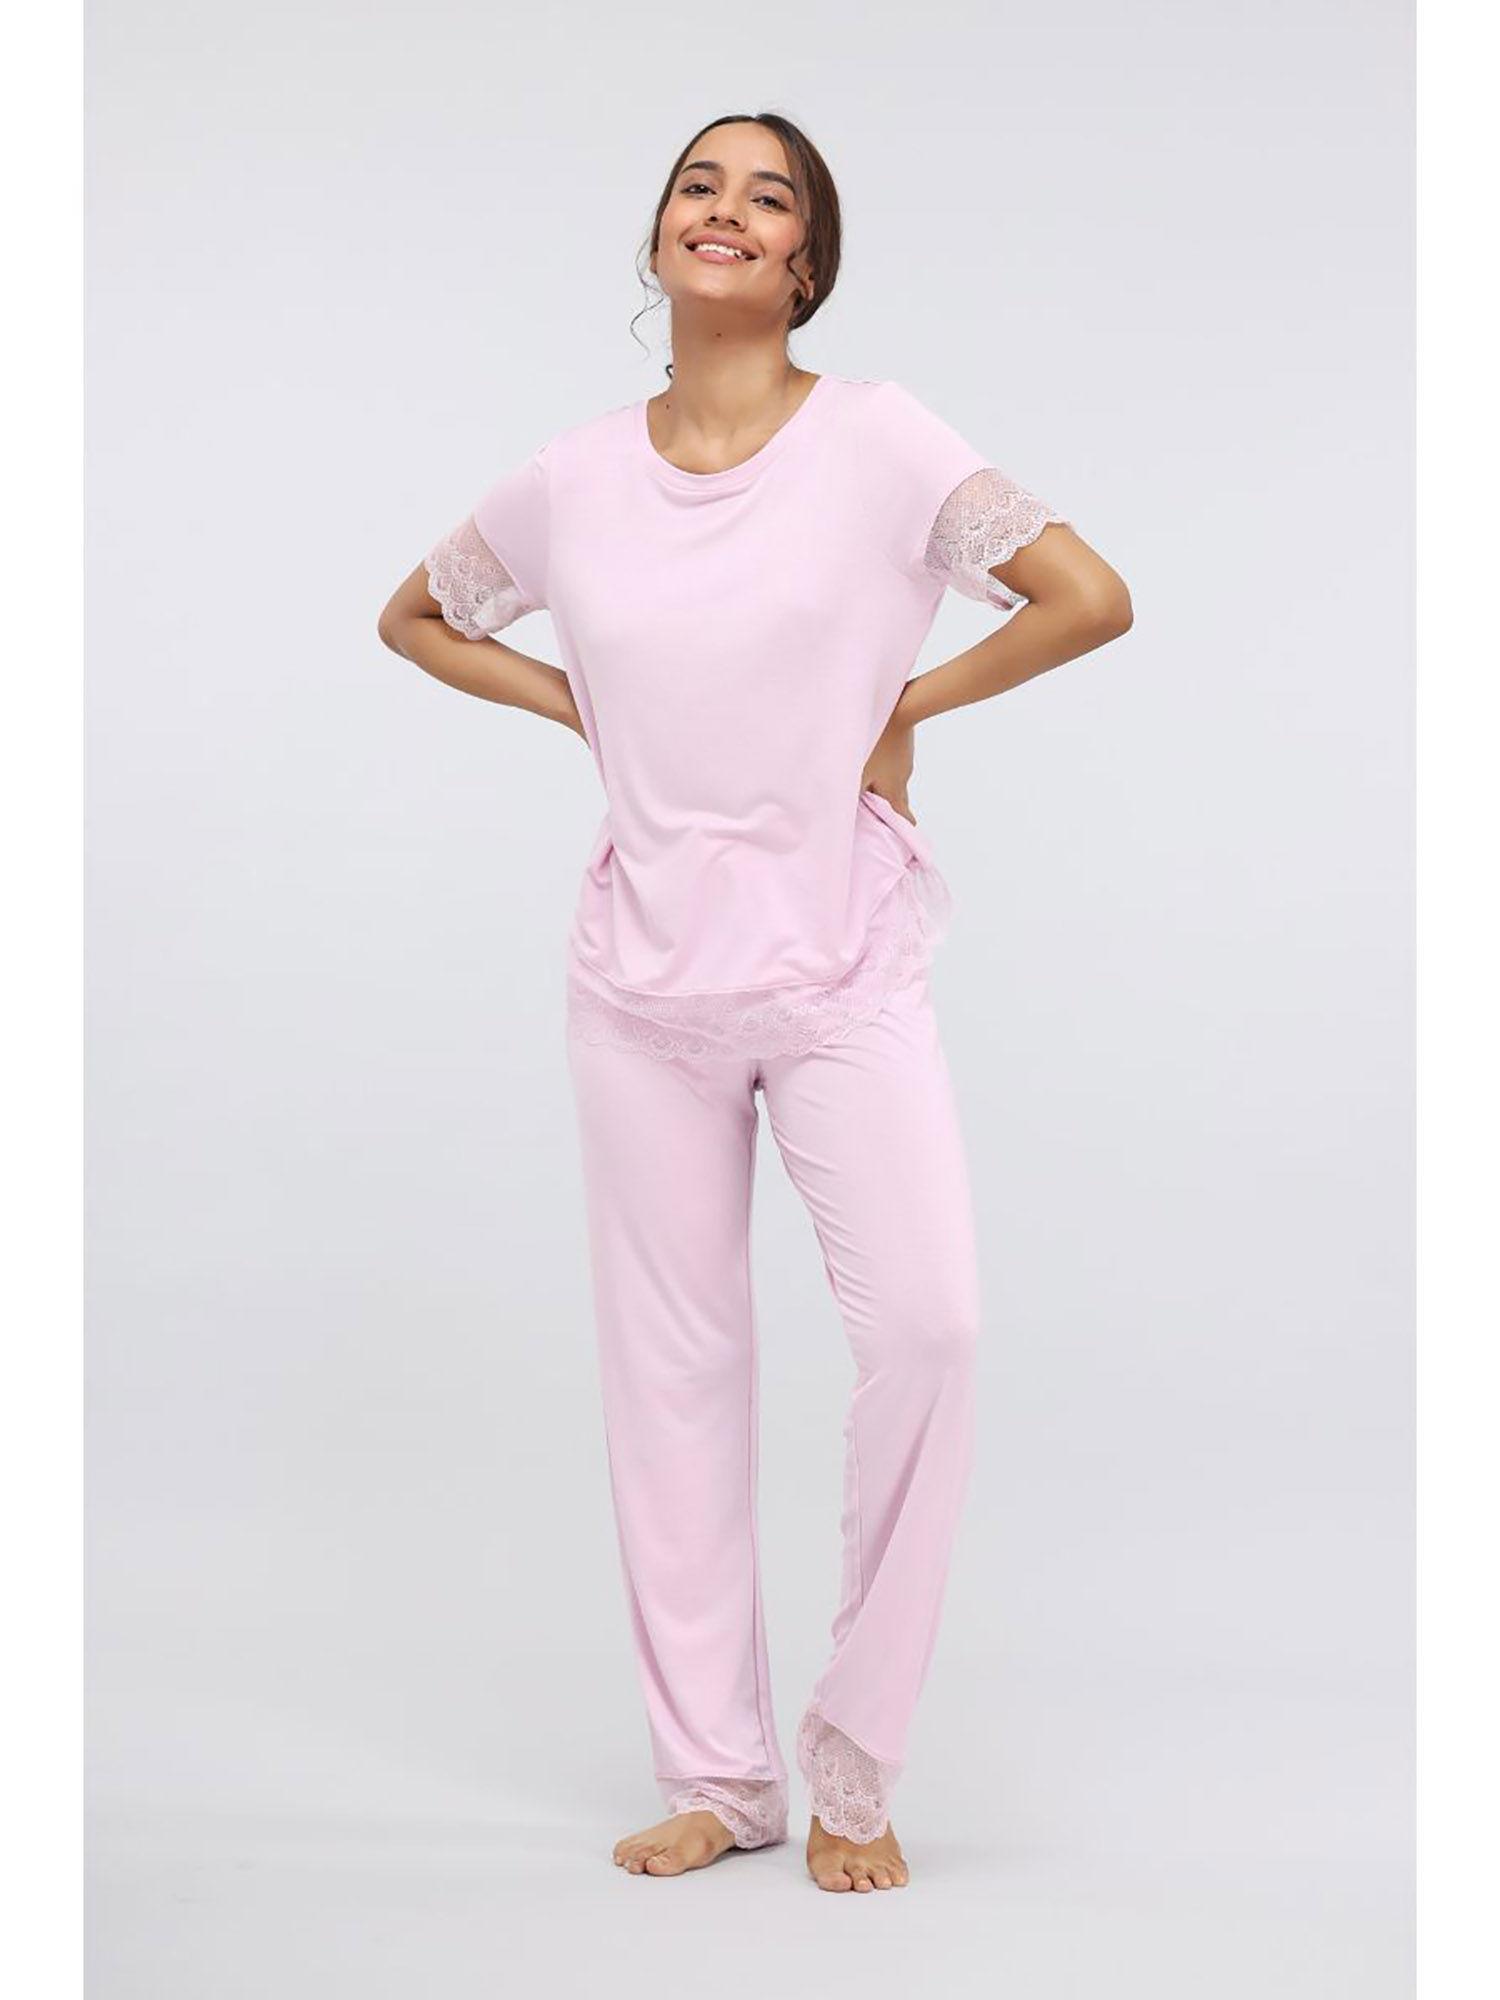 soft pink lace modal pajama (set of 2)